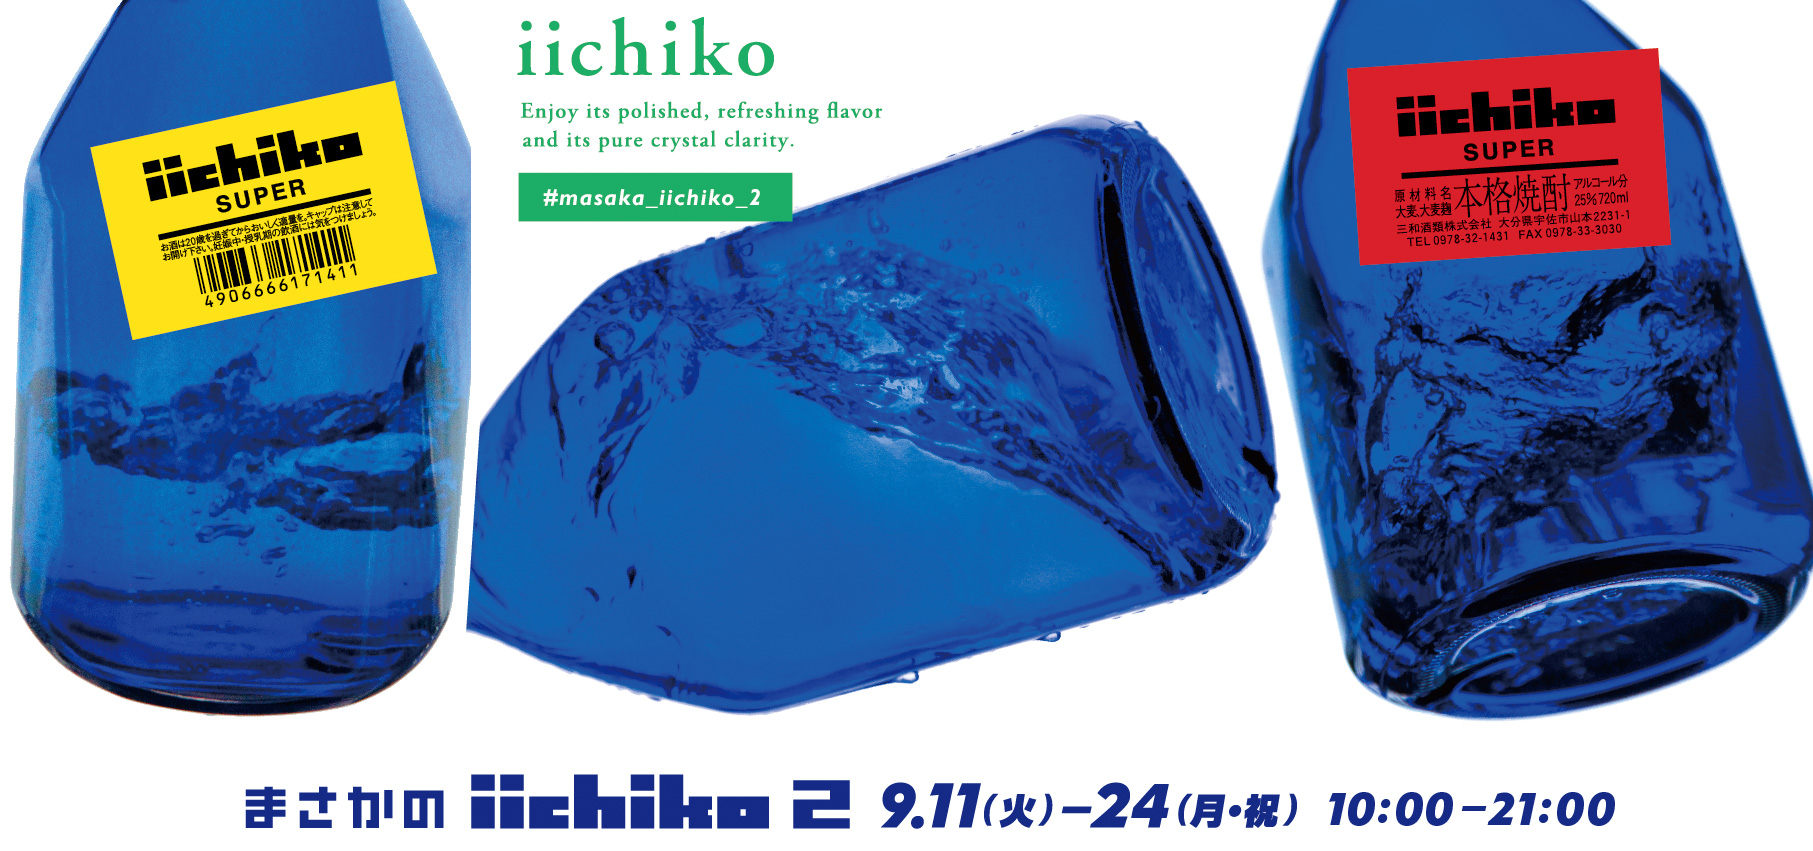 まさかのiichiko2 9.11(火)-24(月・祝) 10:00-21:00